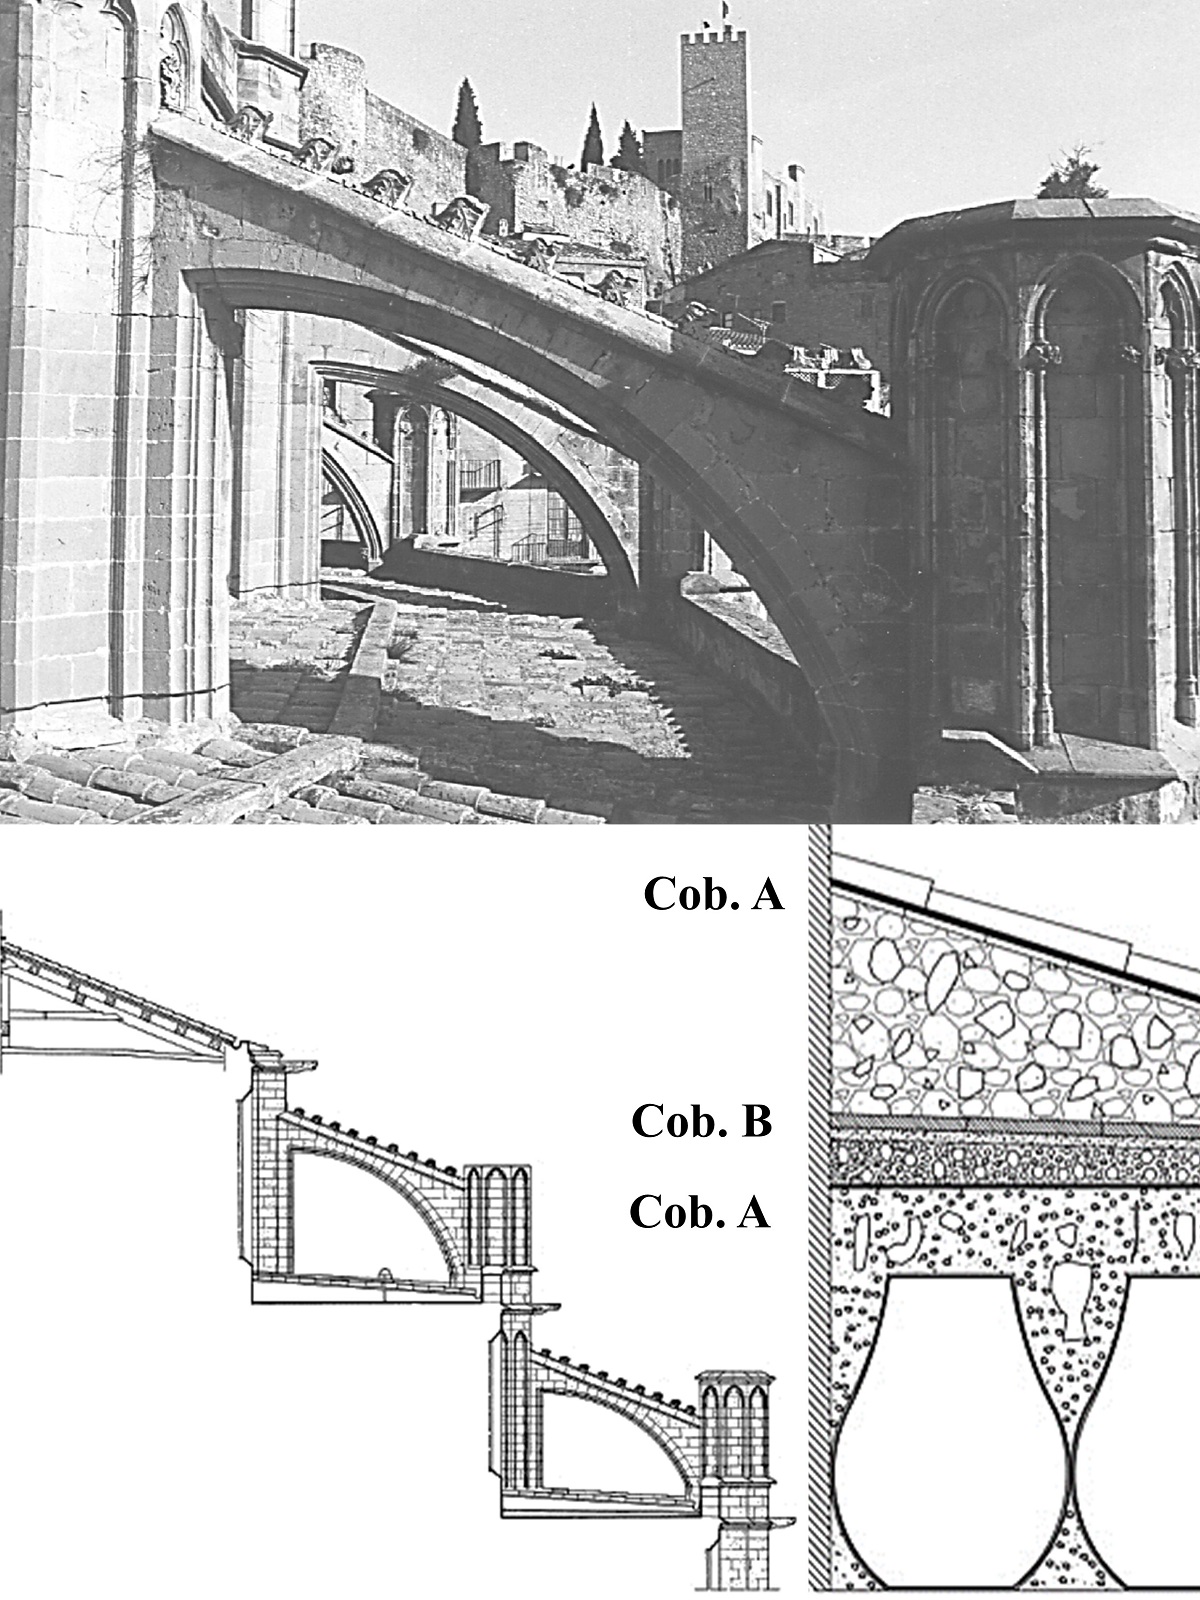 Cubiertas de la catedral Tortosa entre 1803 y 1998: a) cubierta lateral de teja; b) sección de cubiertas inclinadas; c) sección de superposición de cubiertas